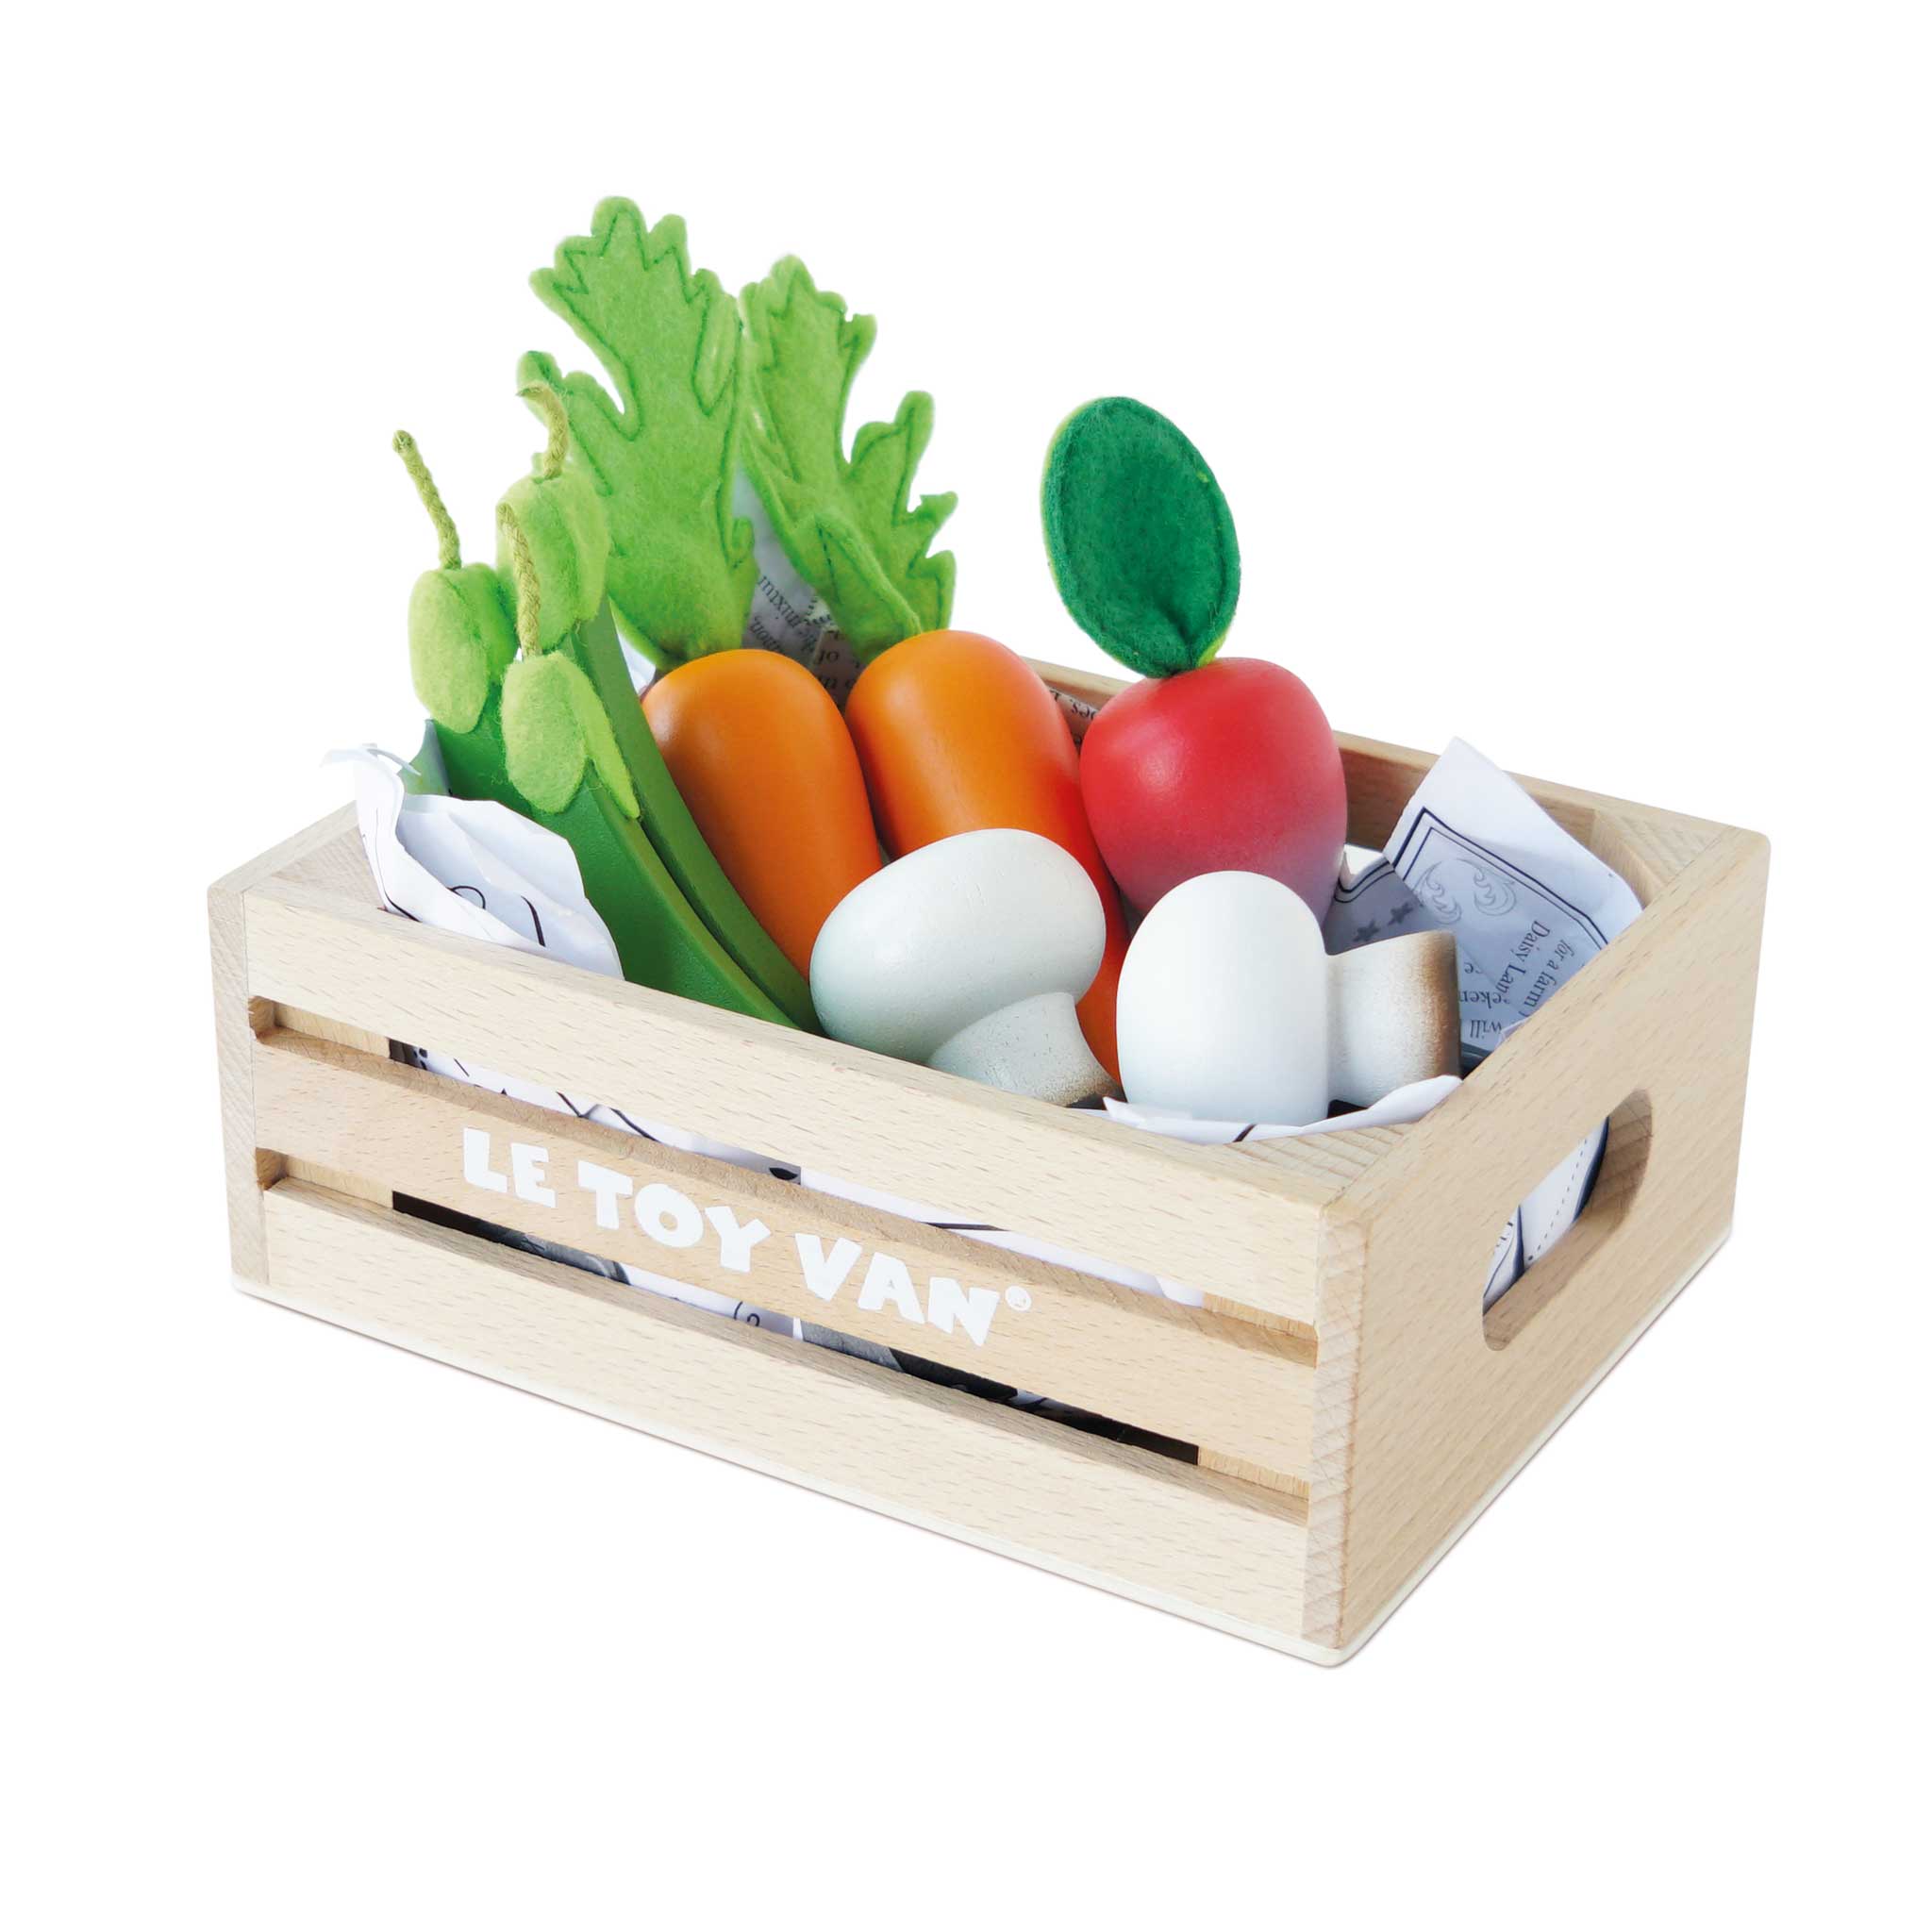 Harvest Vegetables Wooden Food Crate